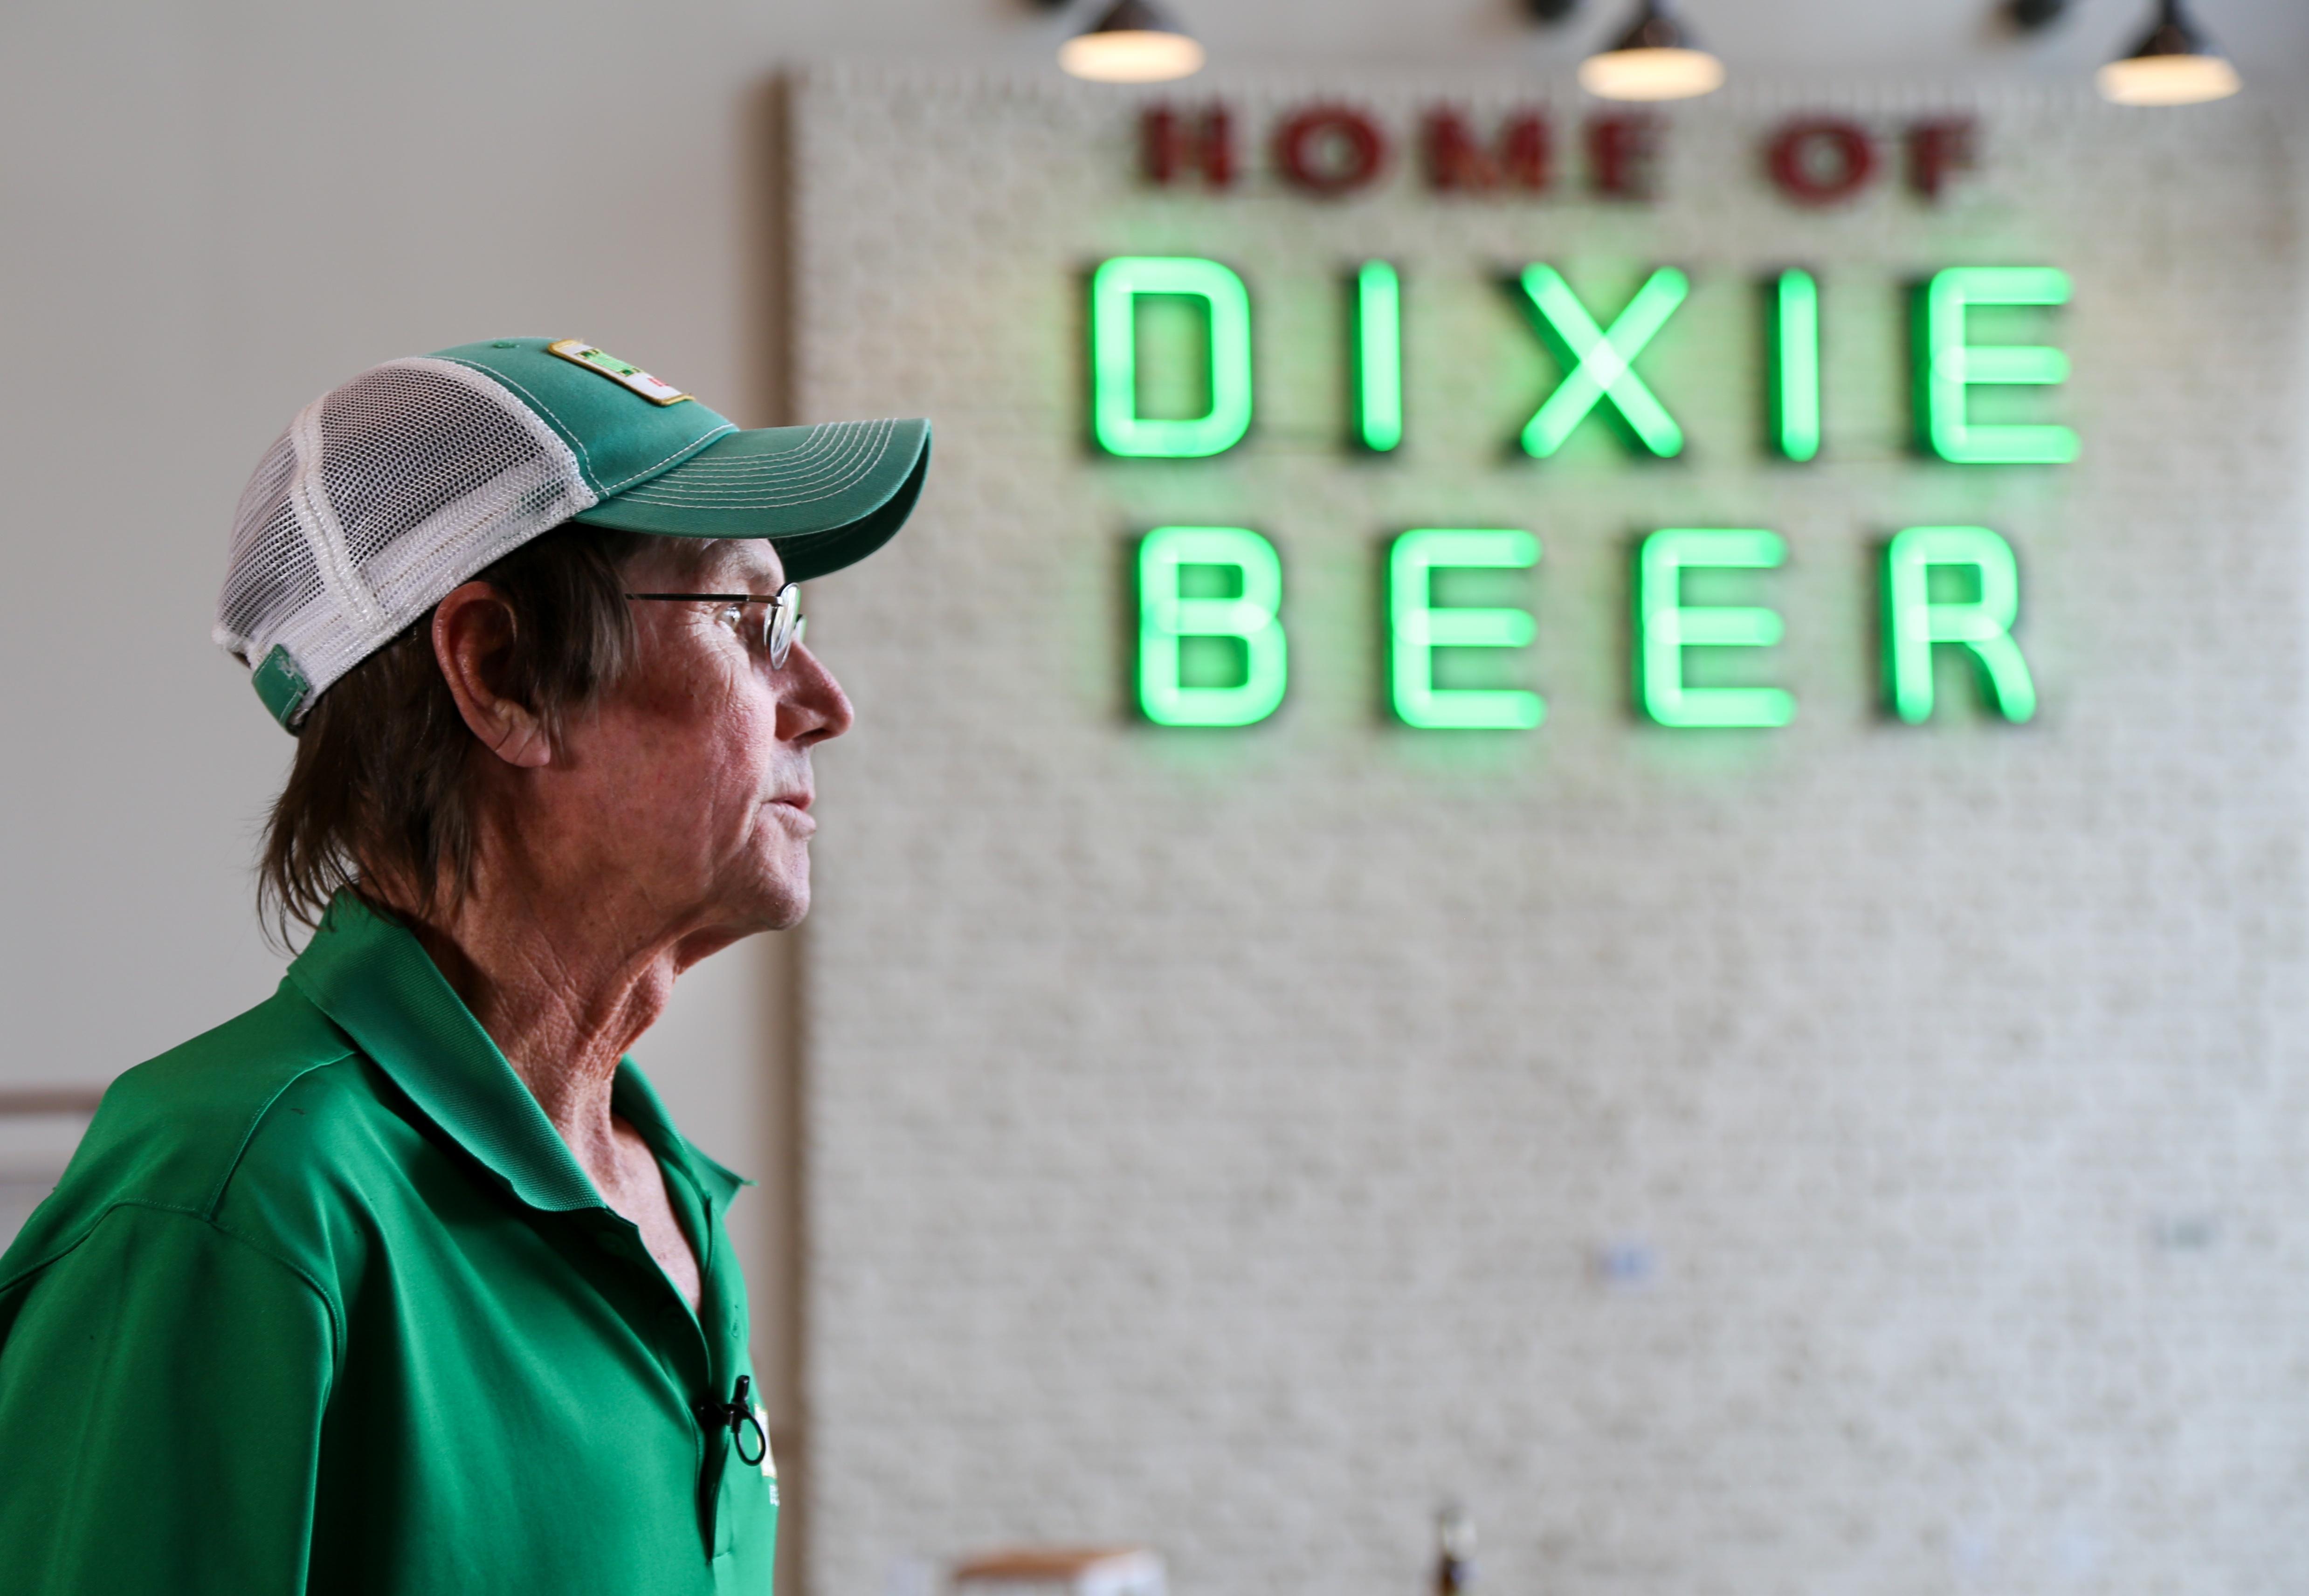 Dixie Beer worker